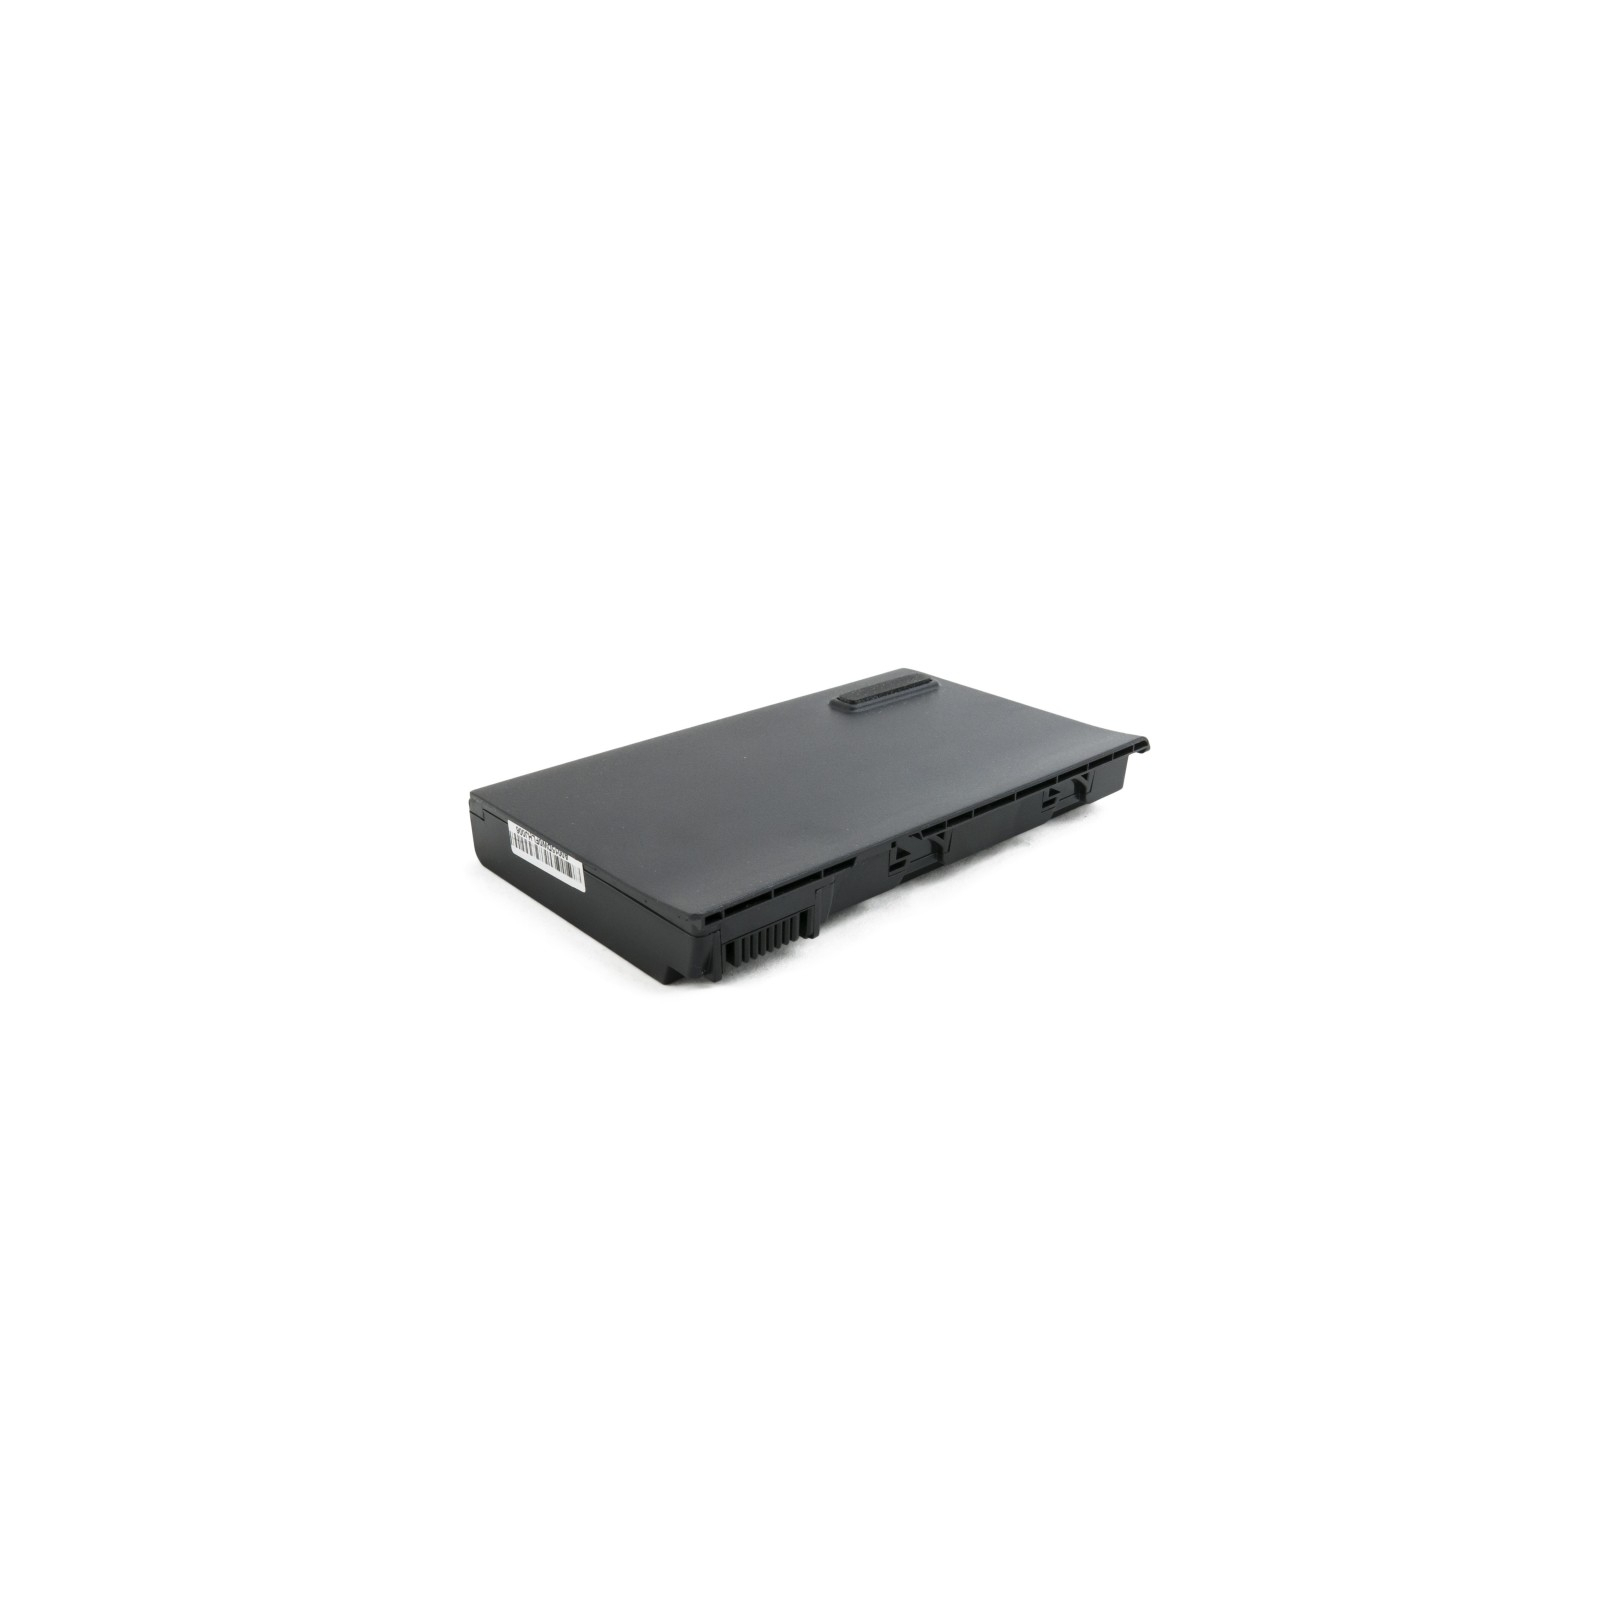 Аккумулятор для ноутбука Acer TravelMate 5320, 5200 mAh Extradigital (BNA3909) изображение 3